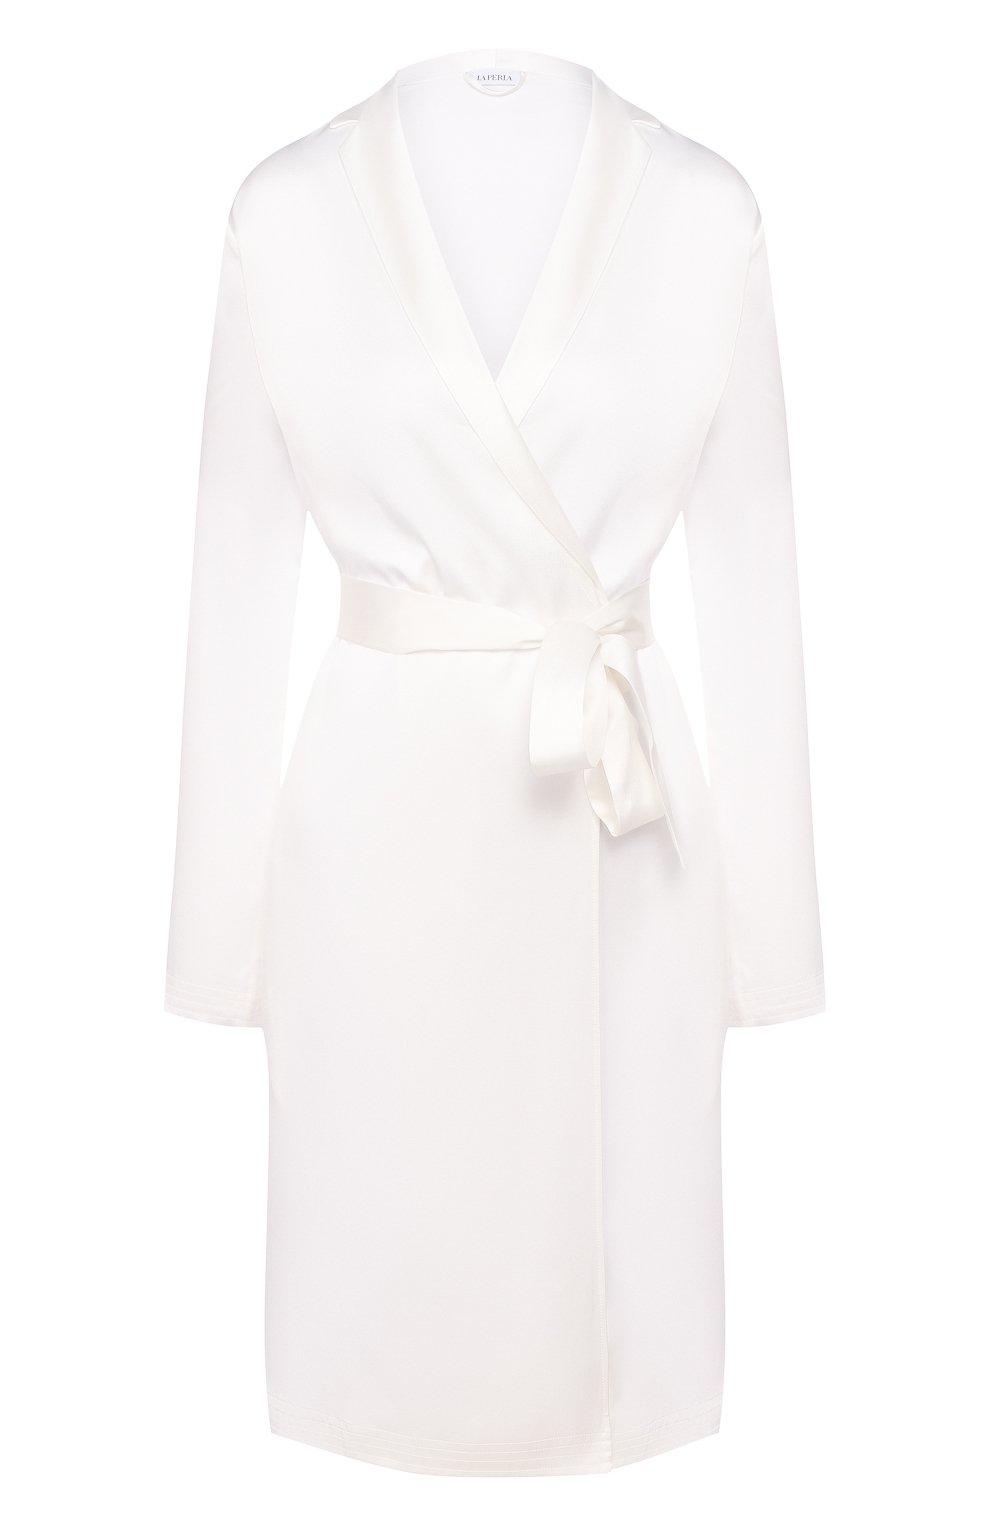 Женский шелковый халат LA PERLA белого цвета, арт. 0020293 | Фото 1 (Материал внешний: Шелк)